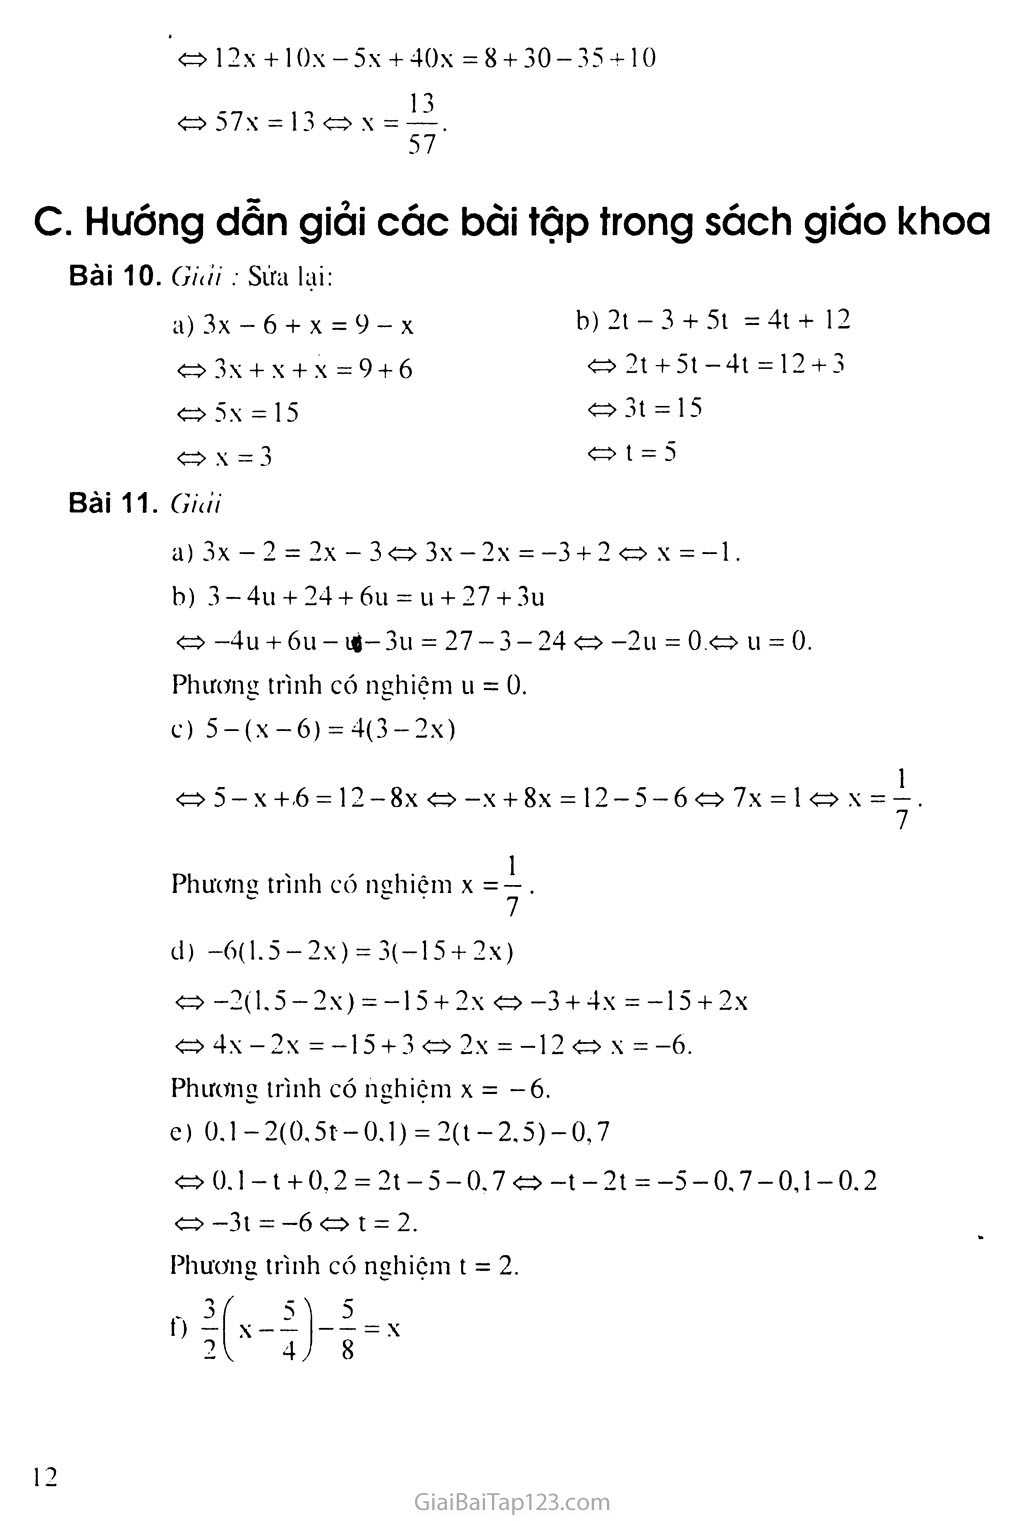 Bài 3. Phương trình đưa được về dạng ax + b = 0 trang 3